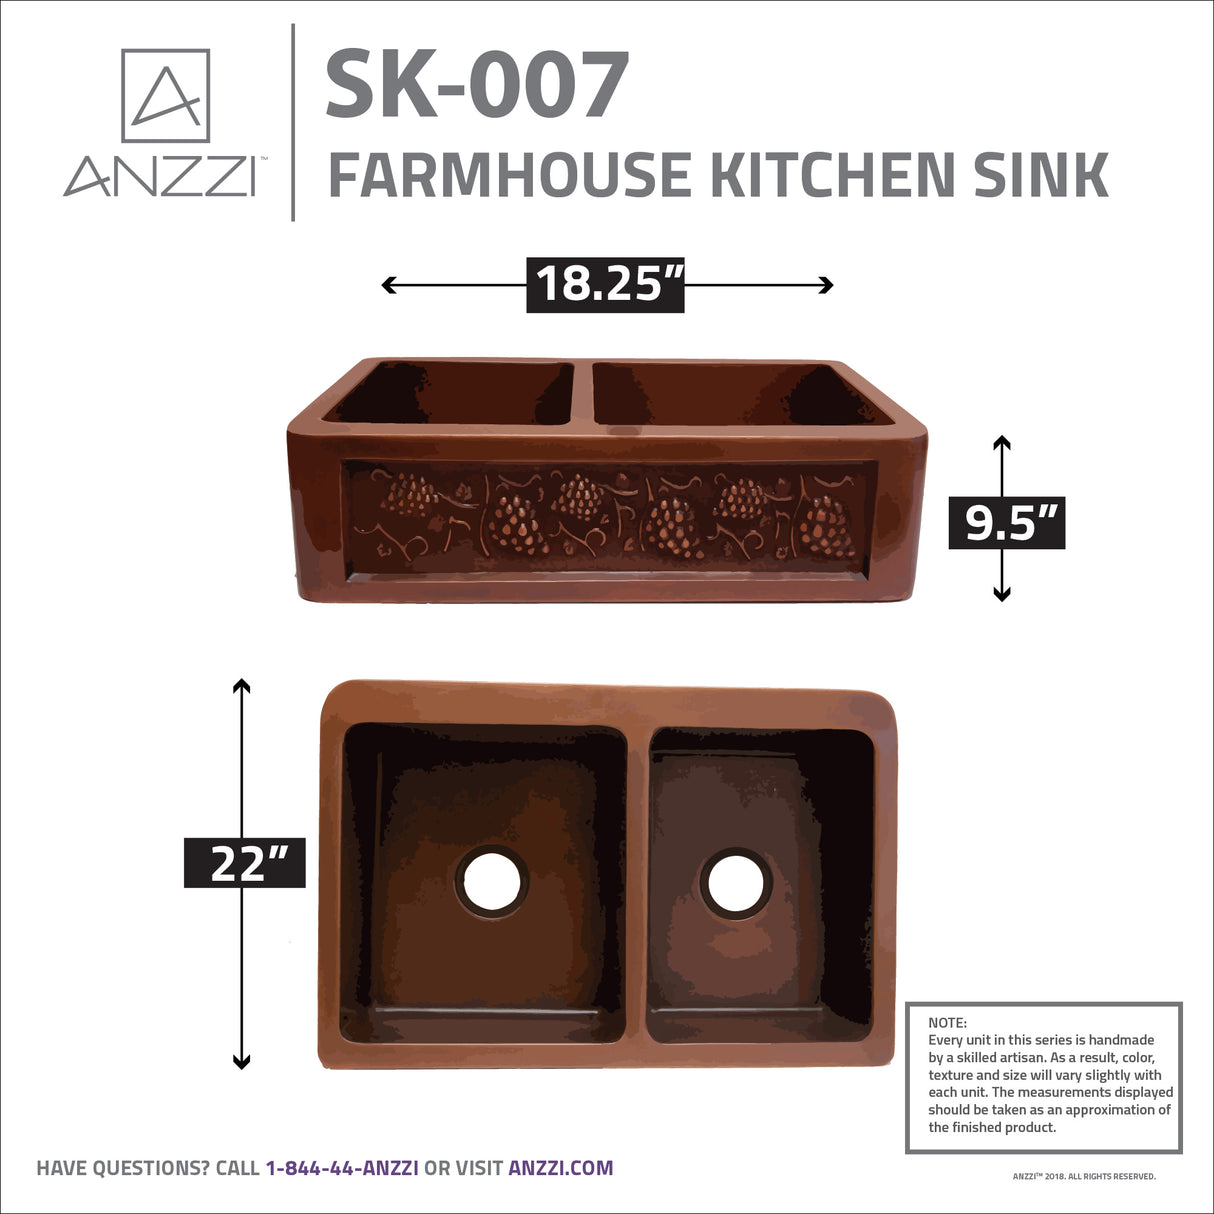 ANZZI SK-007 Dalmatia Farmhouse Handmade Copper 33 in. 40/60 Double Bowl Kitchen Sink with Grape Vine Design in Polished Antique Copper